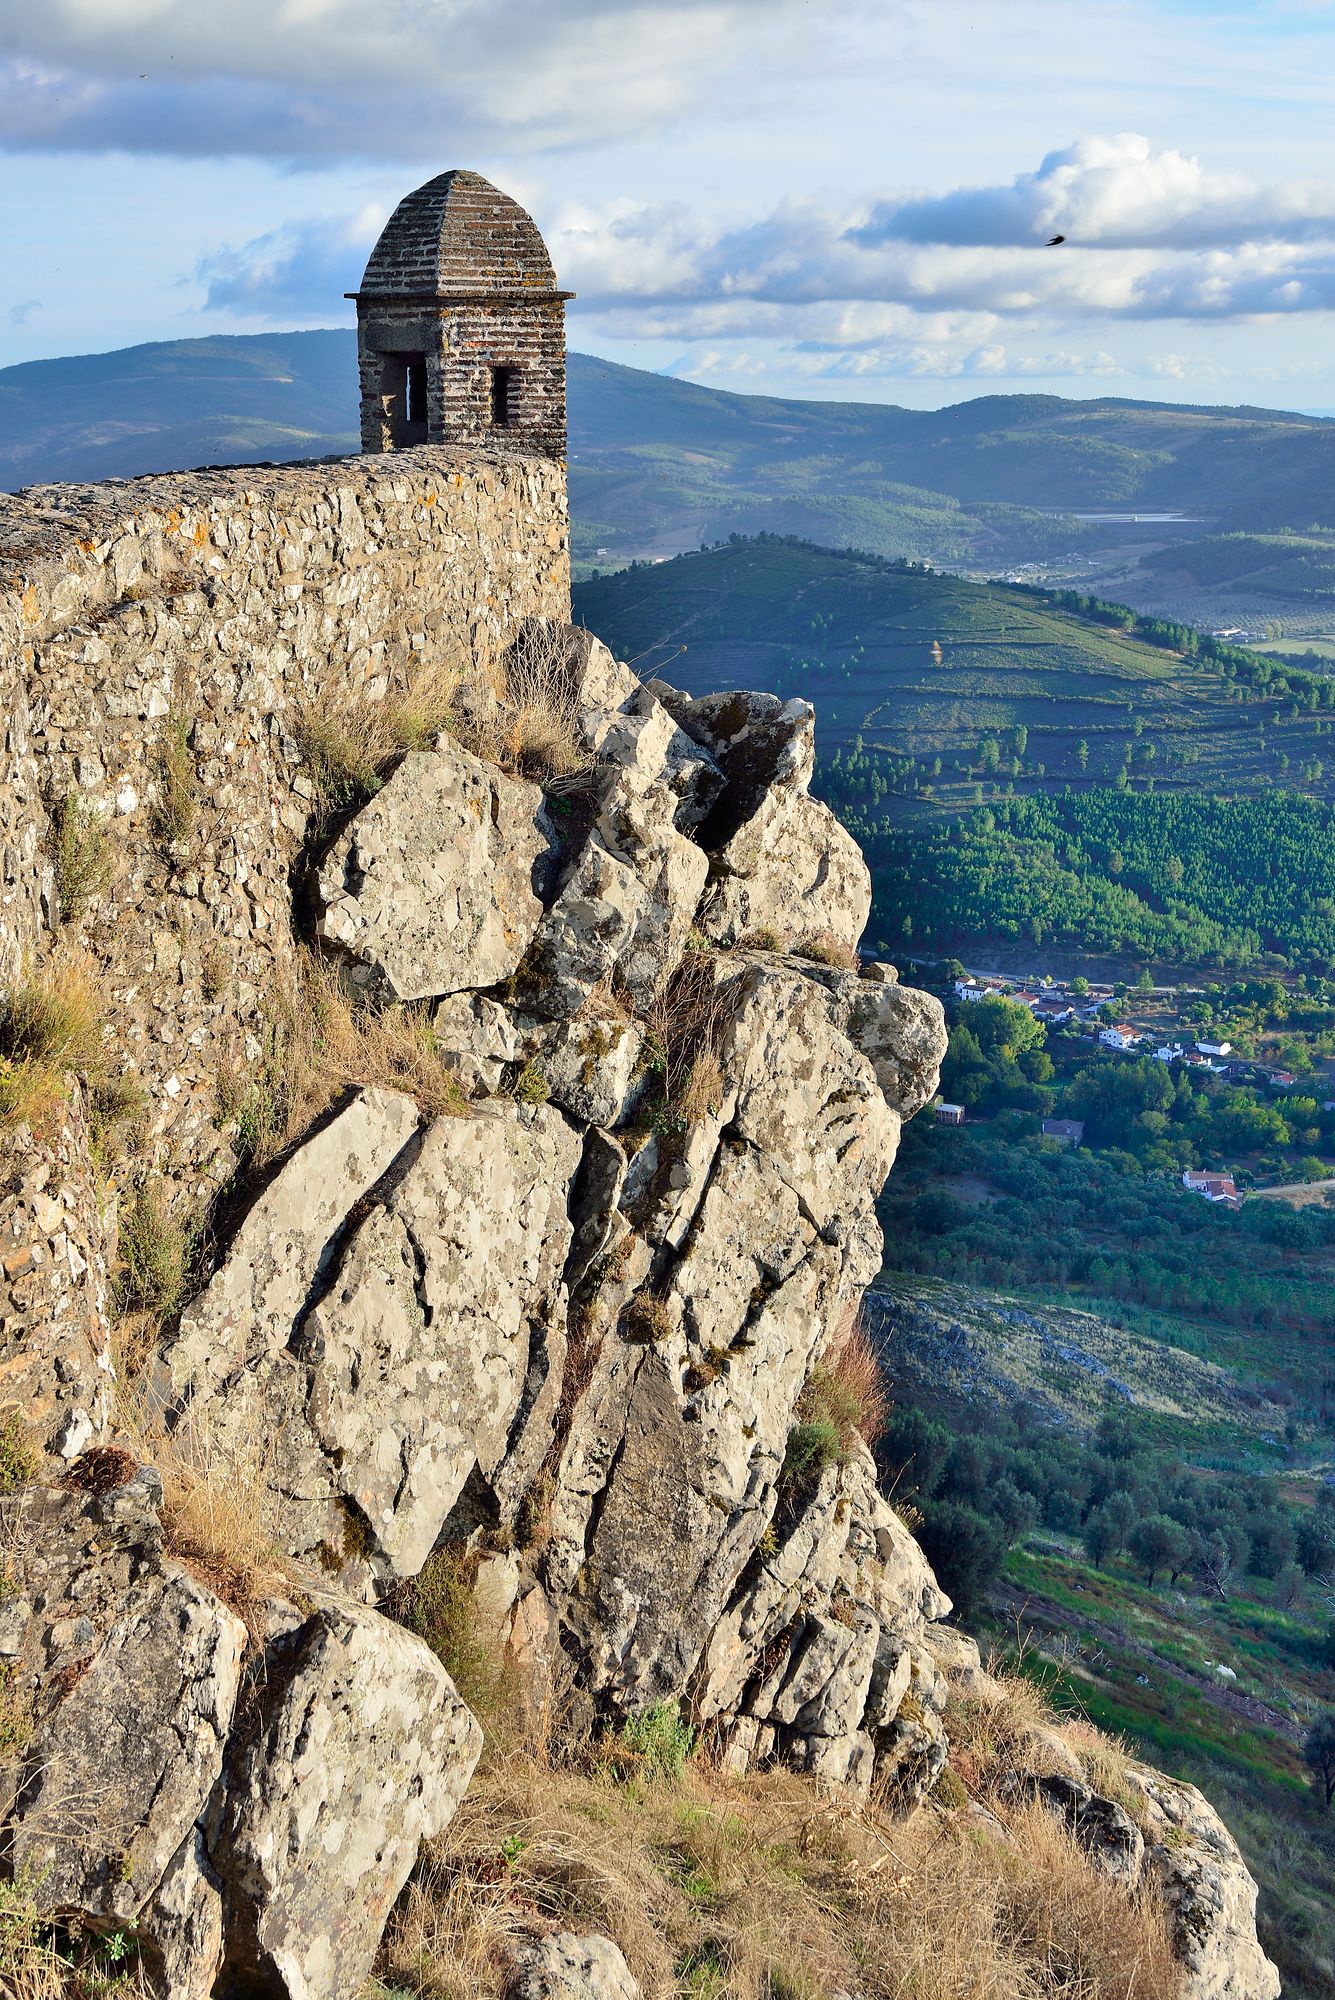 Korkealla vuorella sijaitsevasta Marvãosta lähtee retkeilypolkuja naapurimaan puolelle Espanjaan. © Pekka Numminen